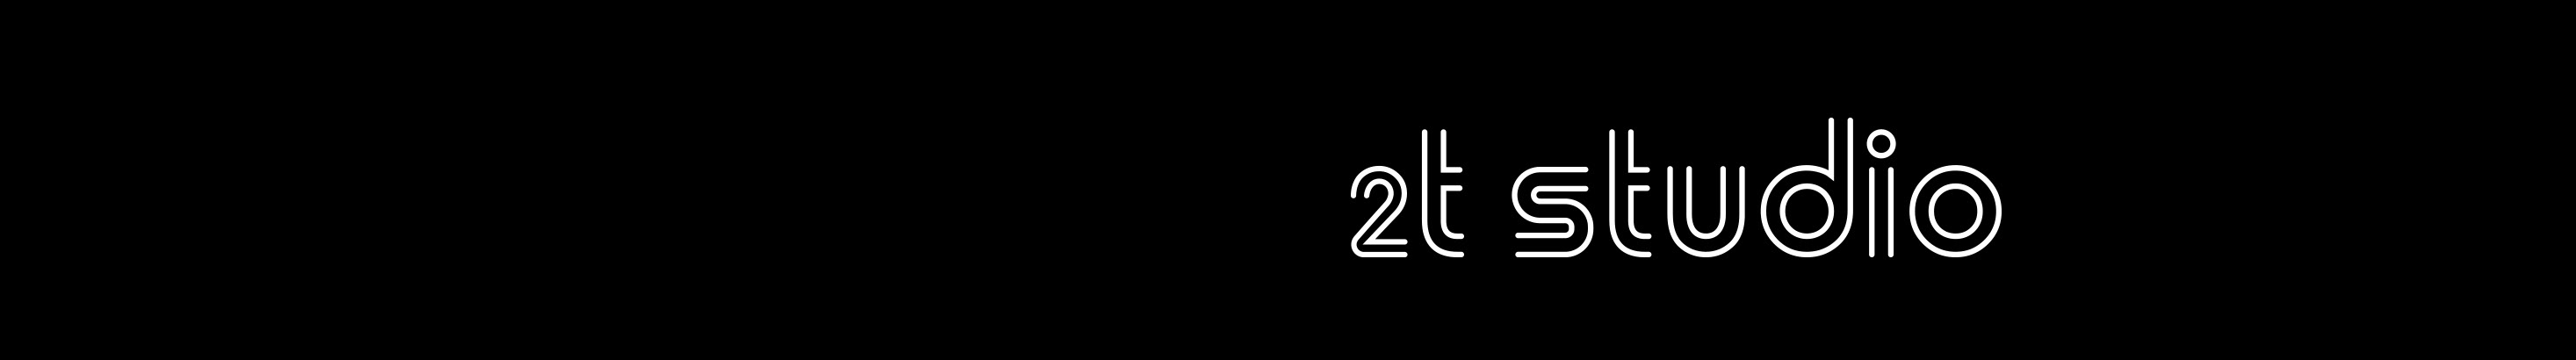 2T Studio Creative's profile banner